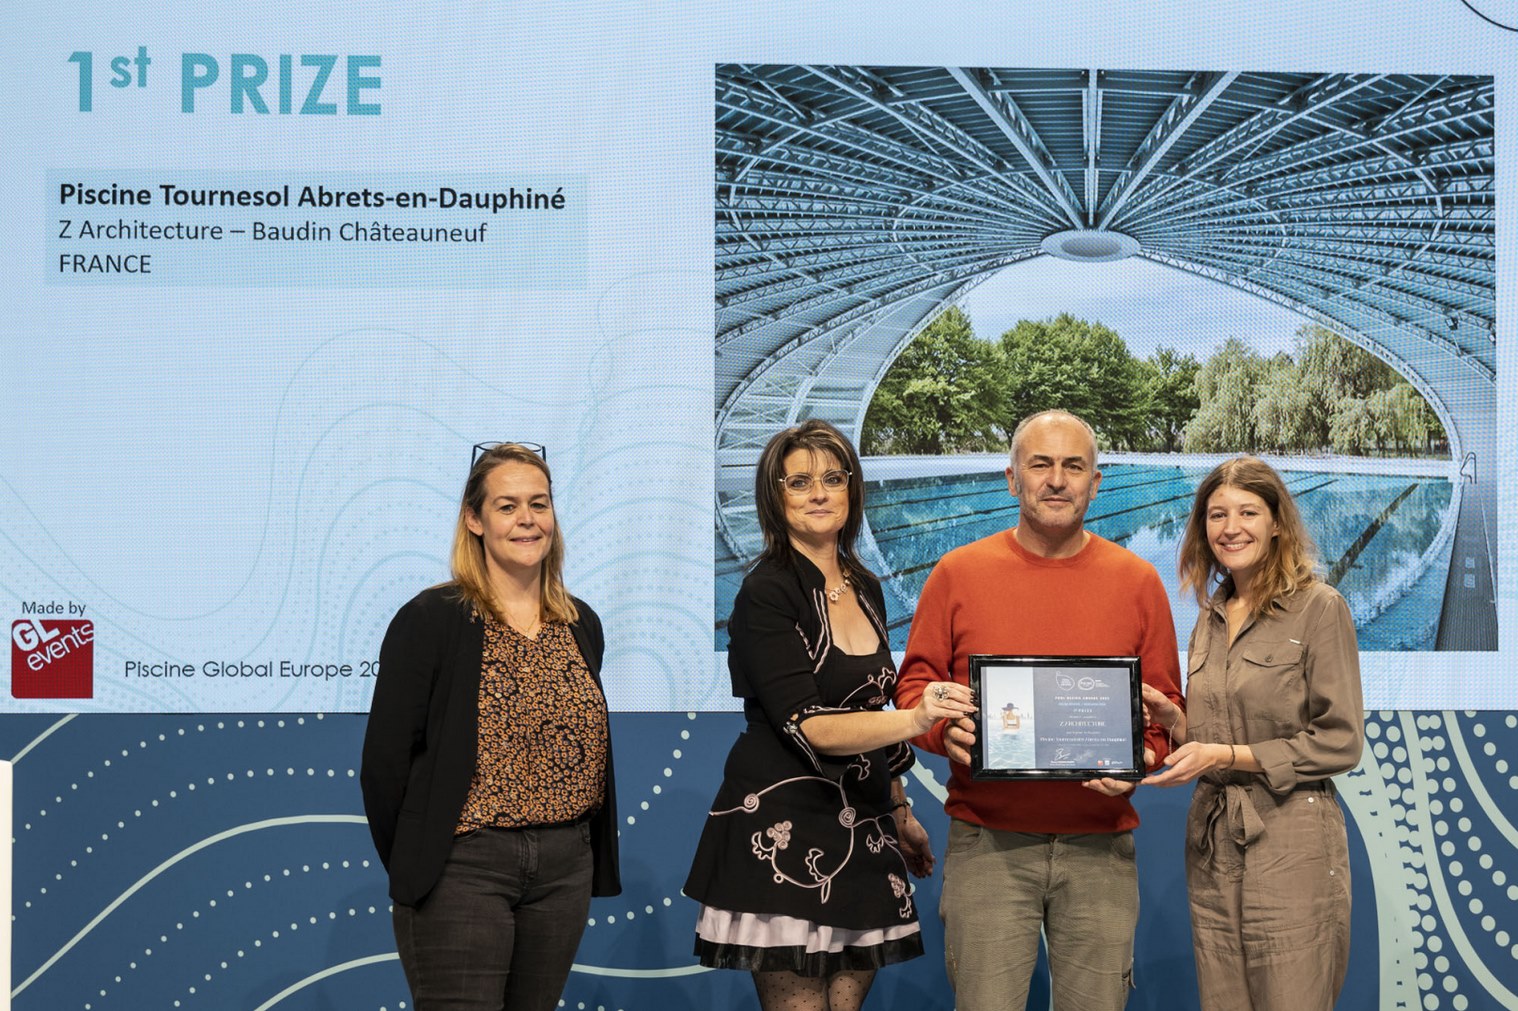 Réhabilitation piscine tournesol - les Abrets - Z Architecture - Pool Design Award